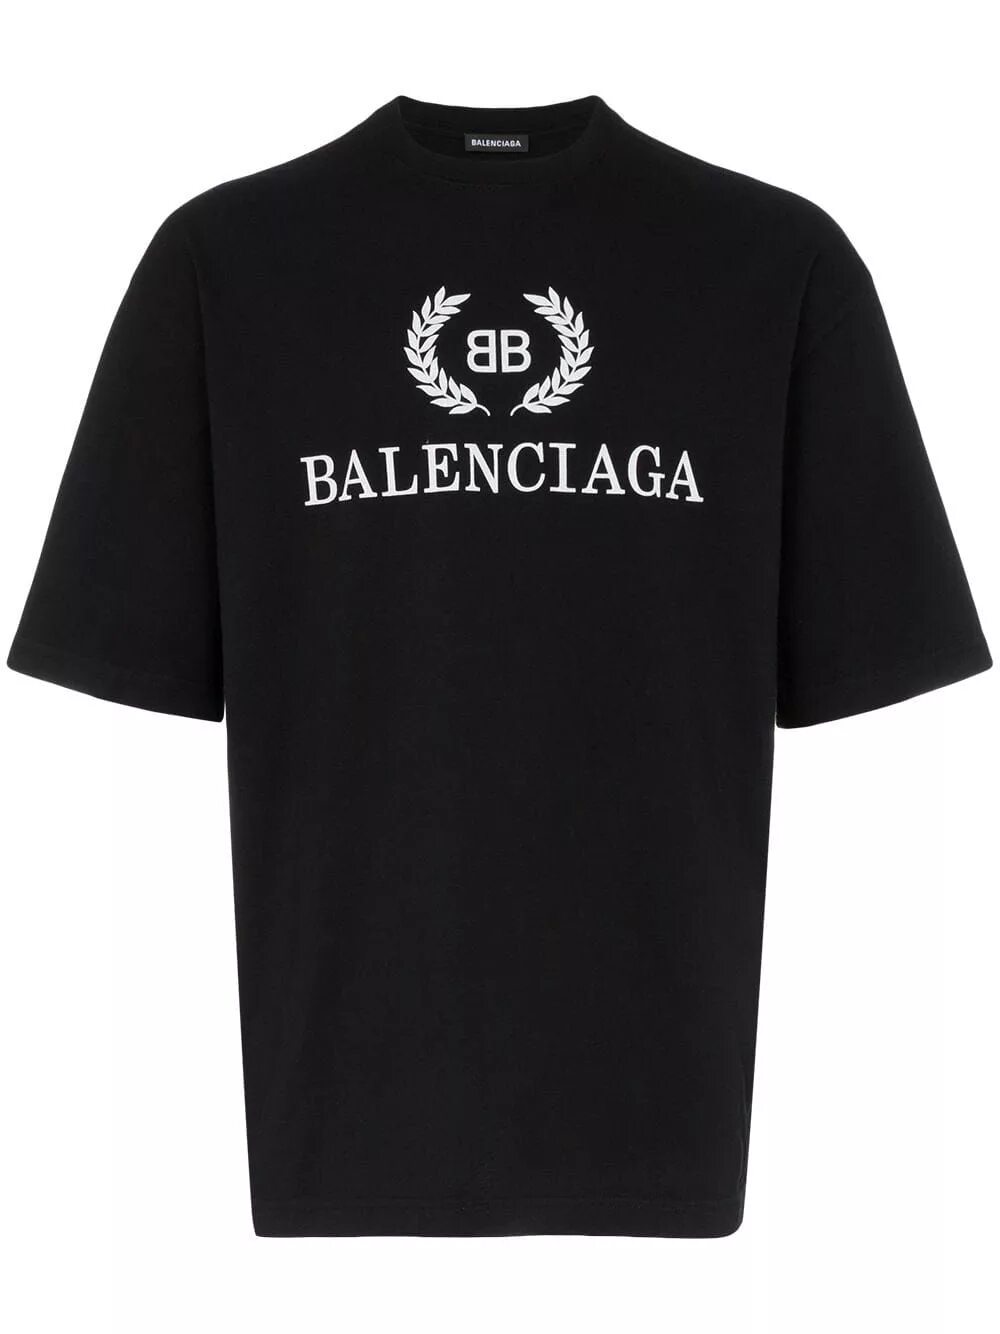 Футболка Баленсиага. Майка Баленсиага черная. Balenciaga принт баленс. Balenciaga футболка мужская черная.